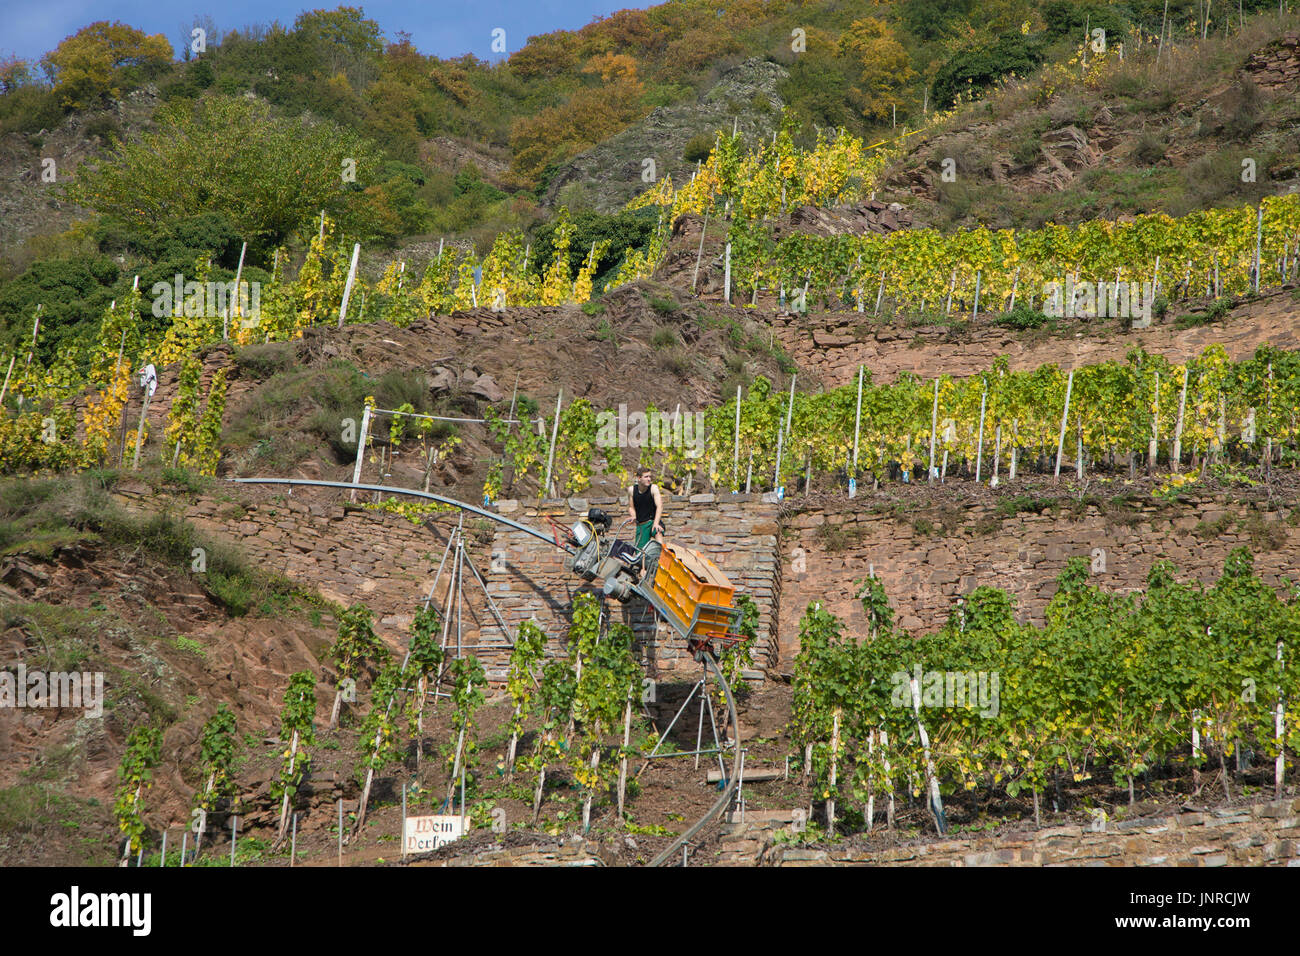 Weinlese mit monorack an der steilen Calmont Weinberg, Bremm, Mosel, Rheinland-Pfalz, Deutschland, Europa Stockfoto